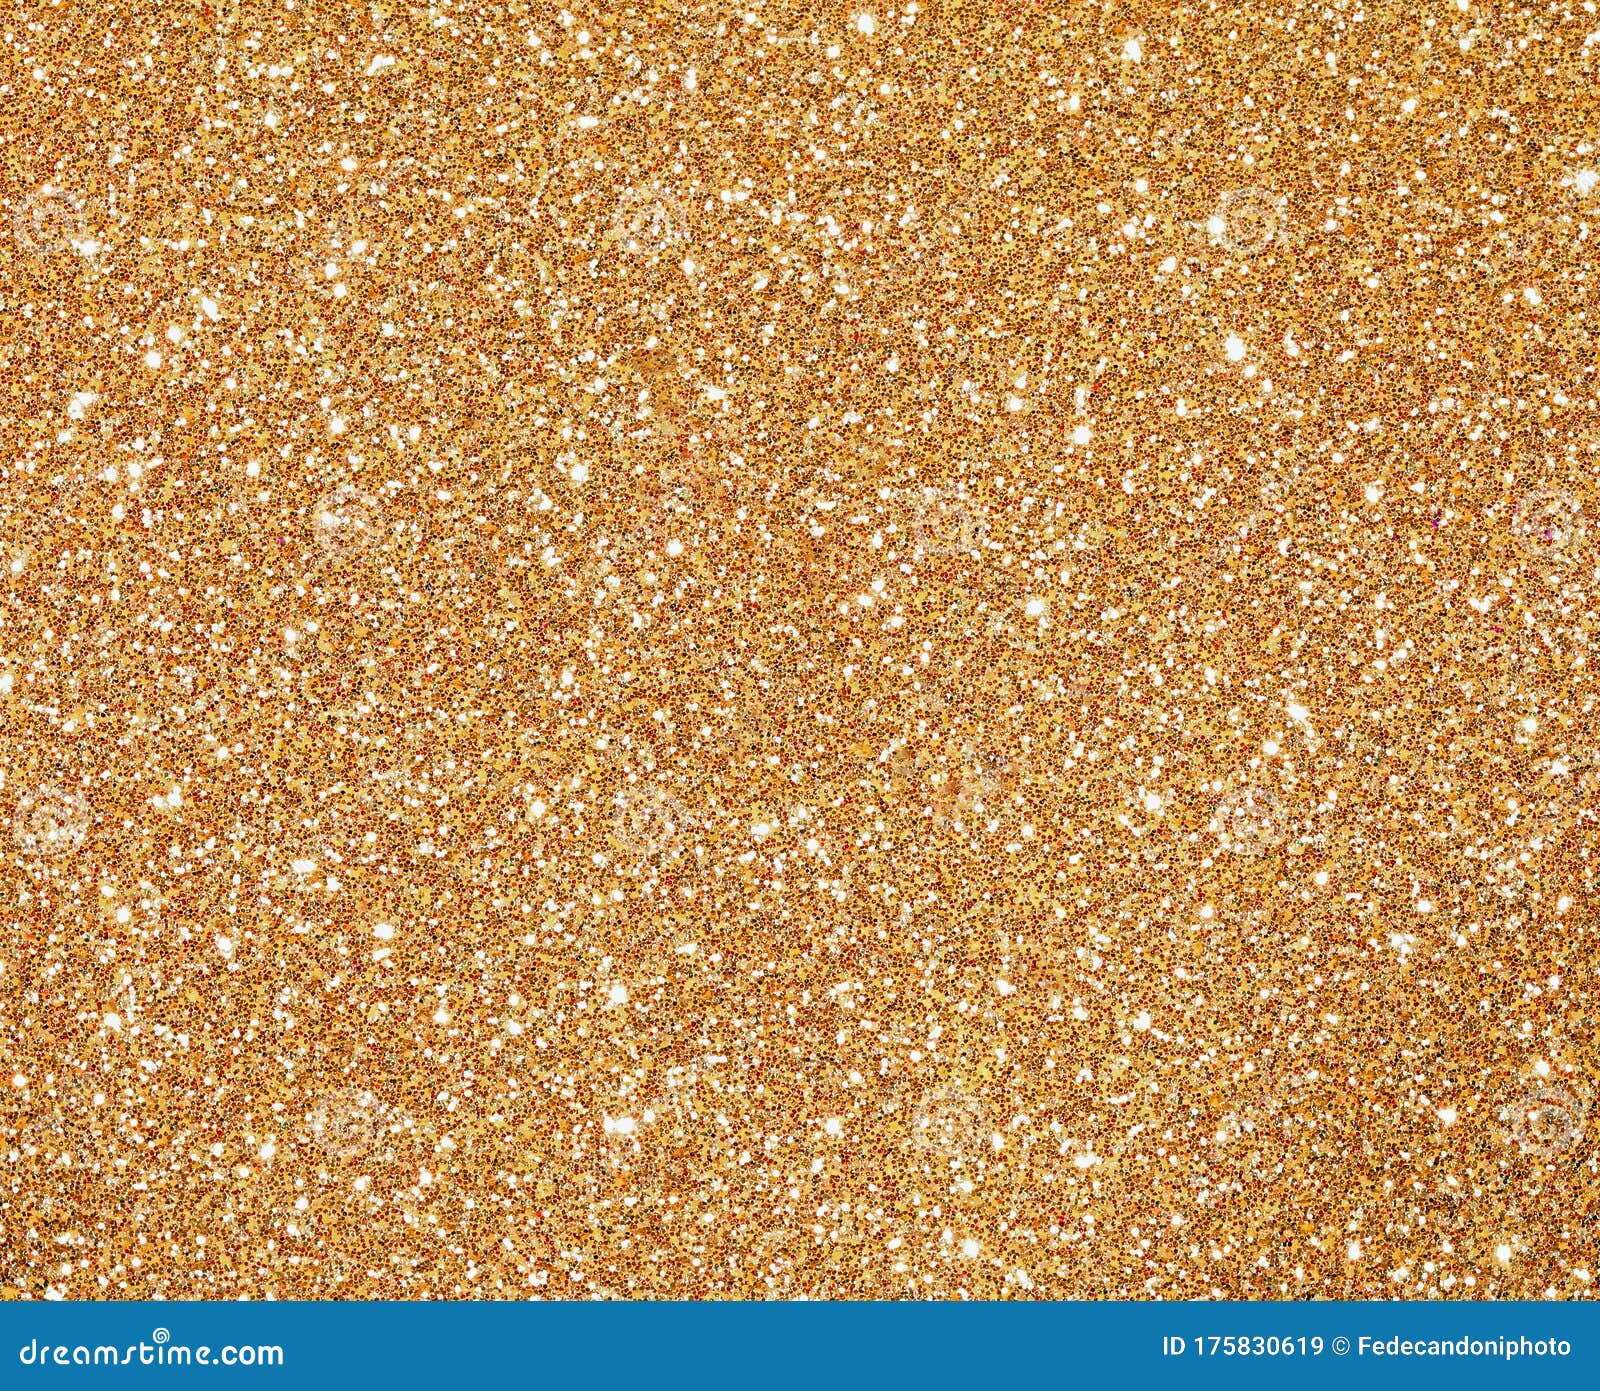 glitter golden background